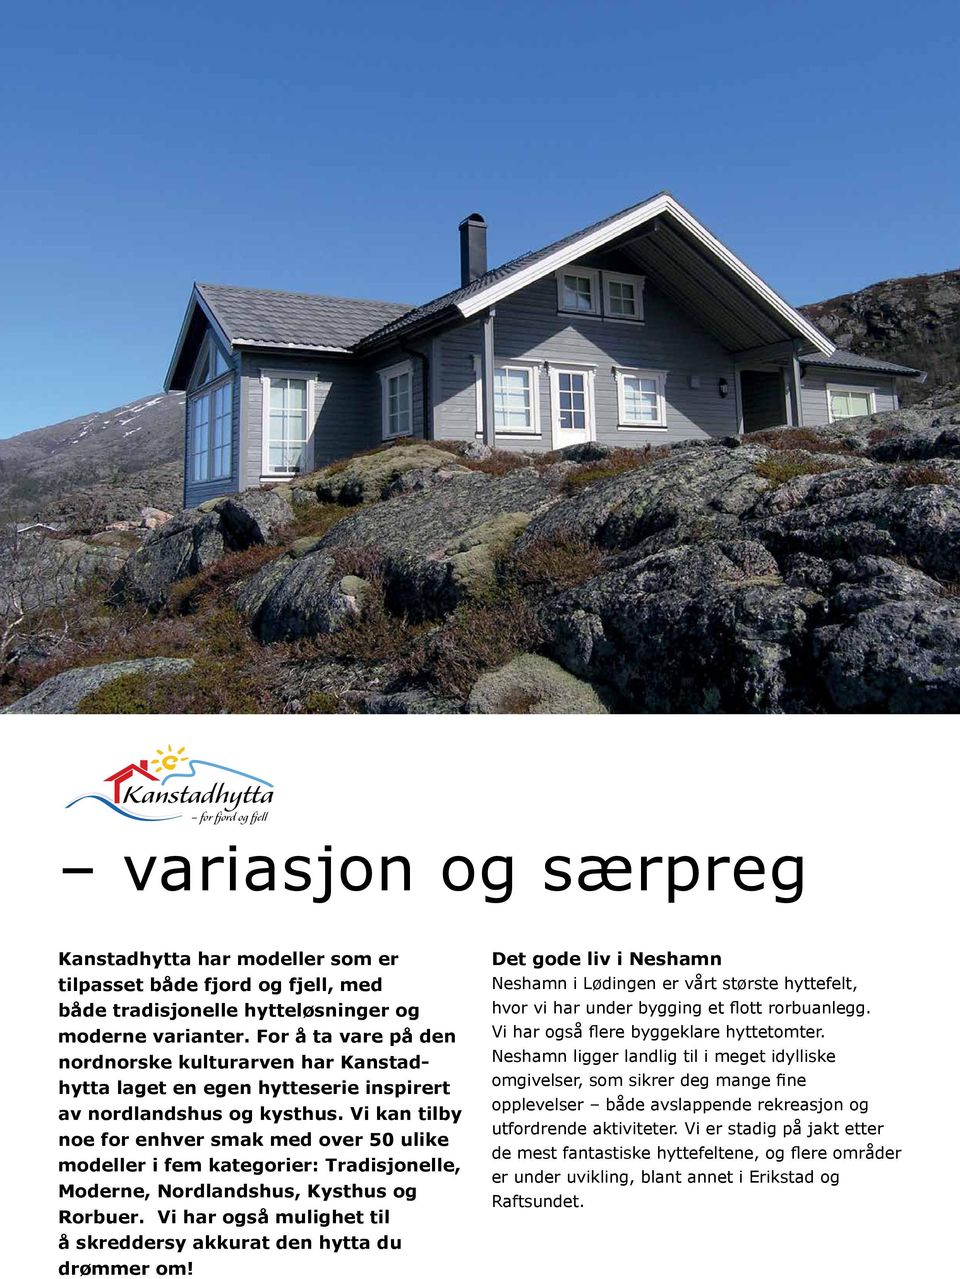 Vi kan tilby for fjord og fjell noe for enhver smak med over 50 ulike modeller i fem kategorier: Tradi sjonelle, Moderne, Nordlandshus, Kysthus og Rorbuer.